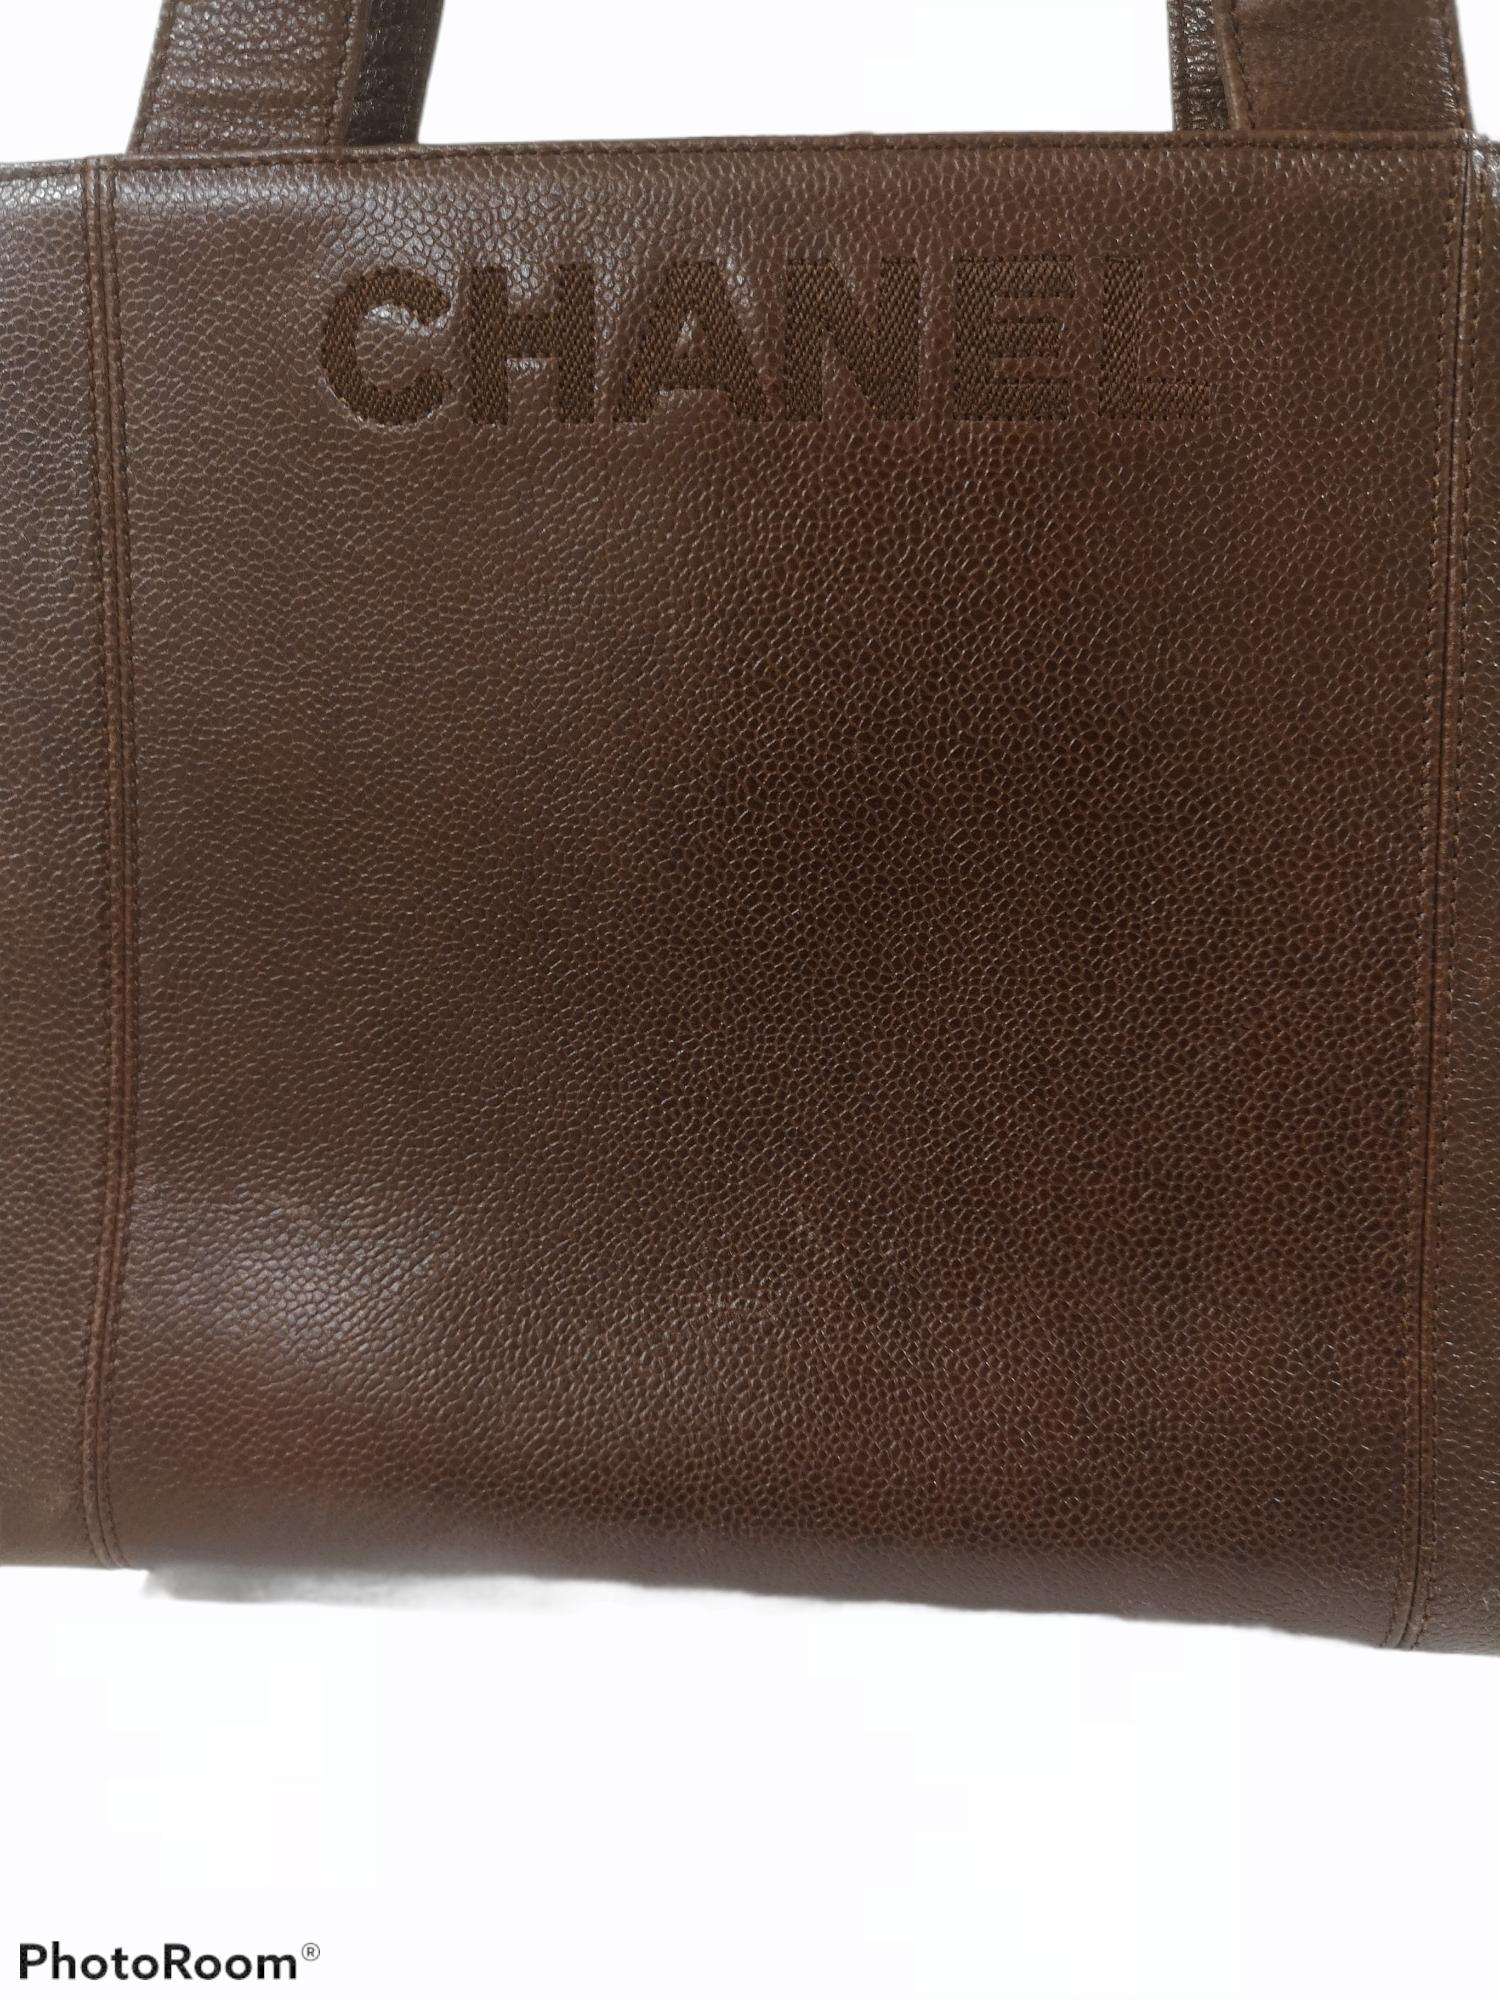 Chanel brown leather Shoulder bag
measurements: 31 * 23 cm , depth 12 cm
Gold tone Chanel hardware logo